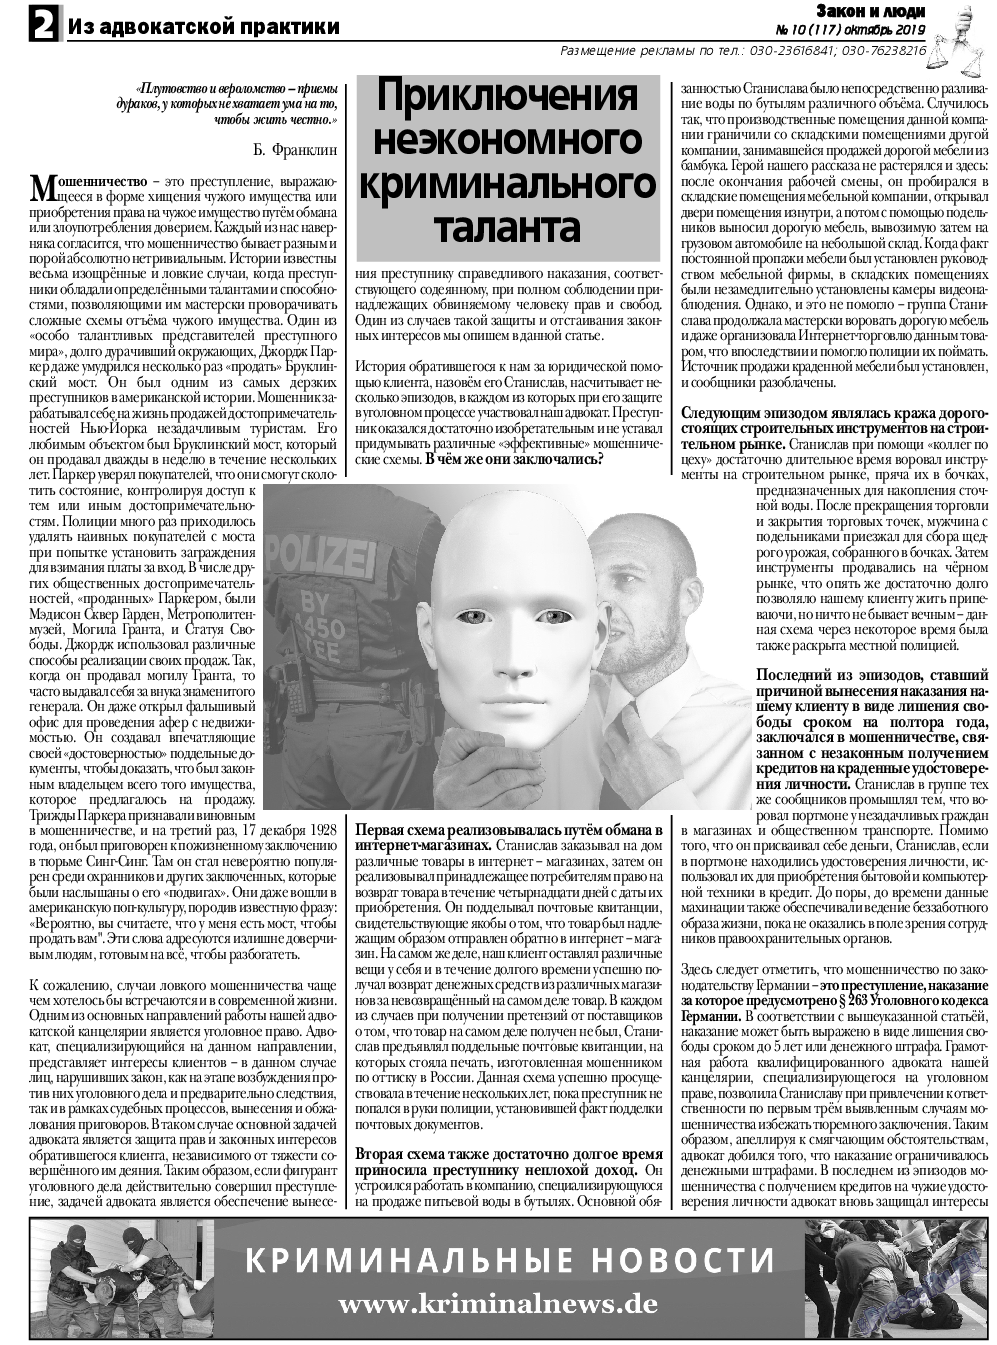 Закон и люди, газета. 2019 №10 стр.2